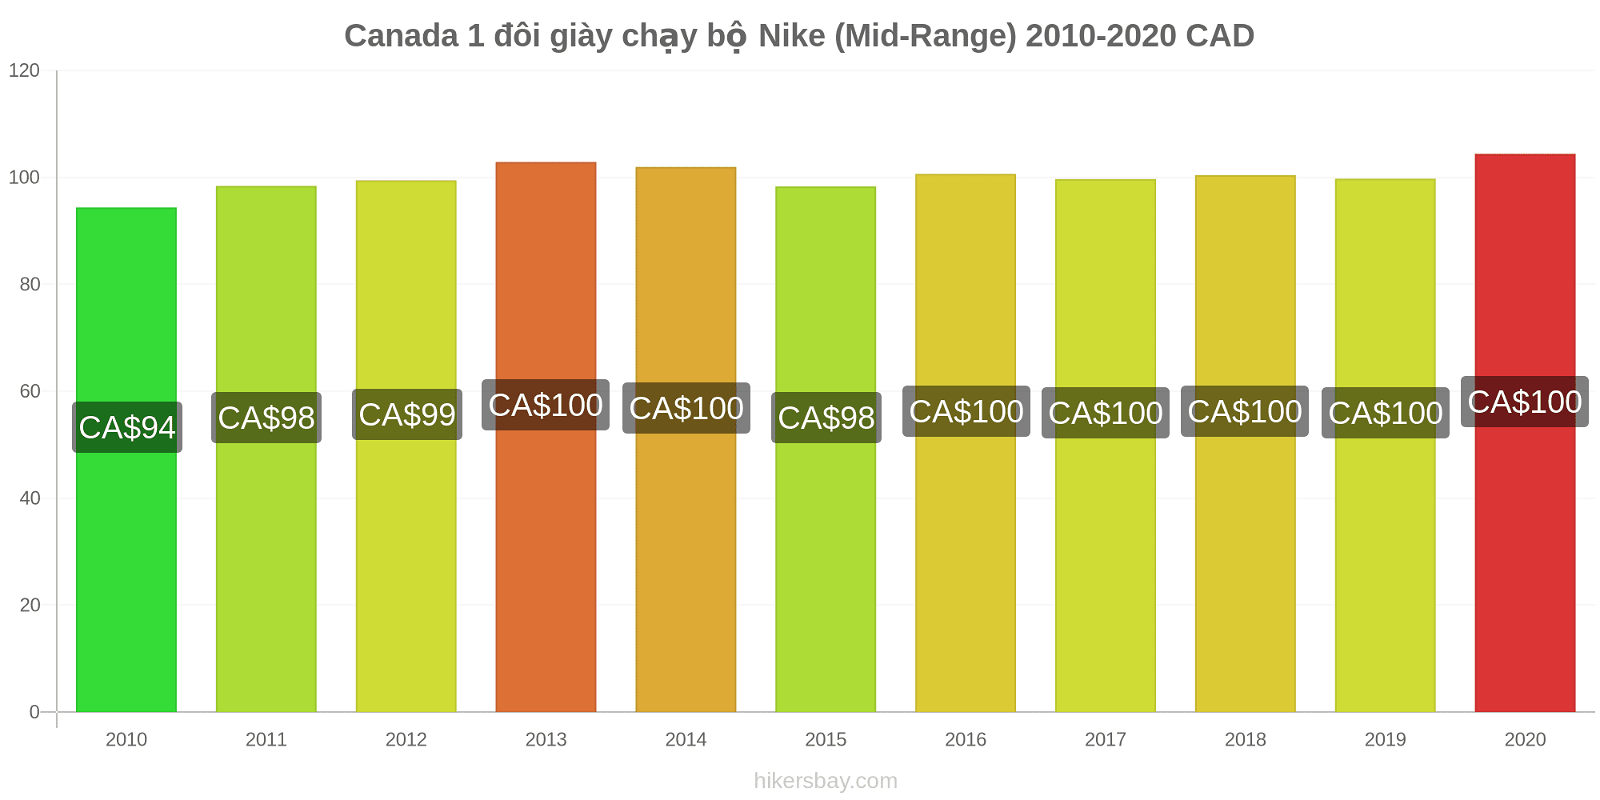 Canada thay đổi giá 1 đôi giày chạy bộ Nike (Mid-Range) hikersbay.com